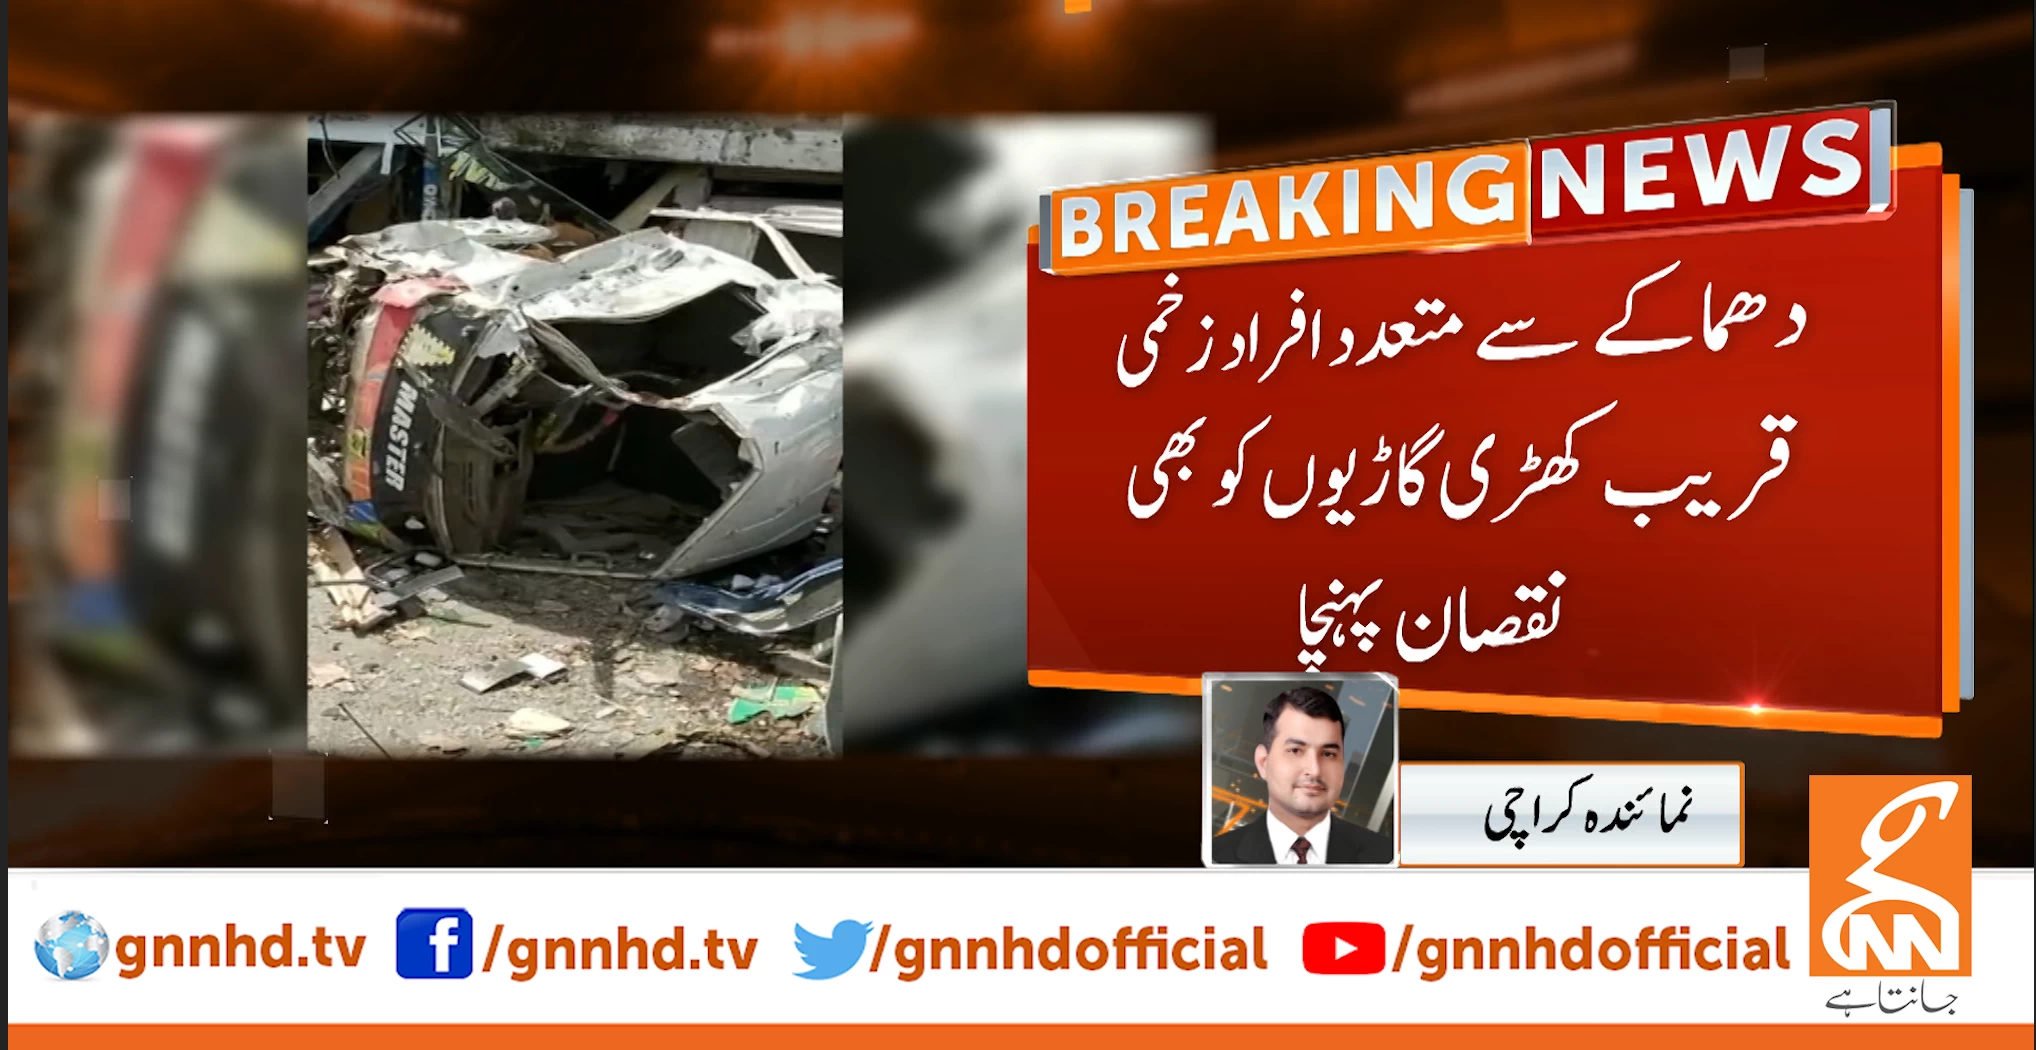 Woman, two children killed in Karachi cylinder blast